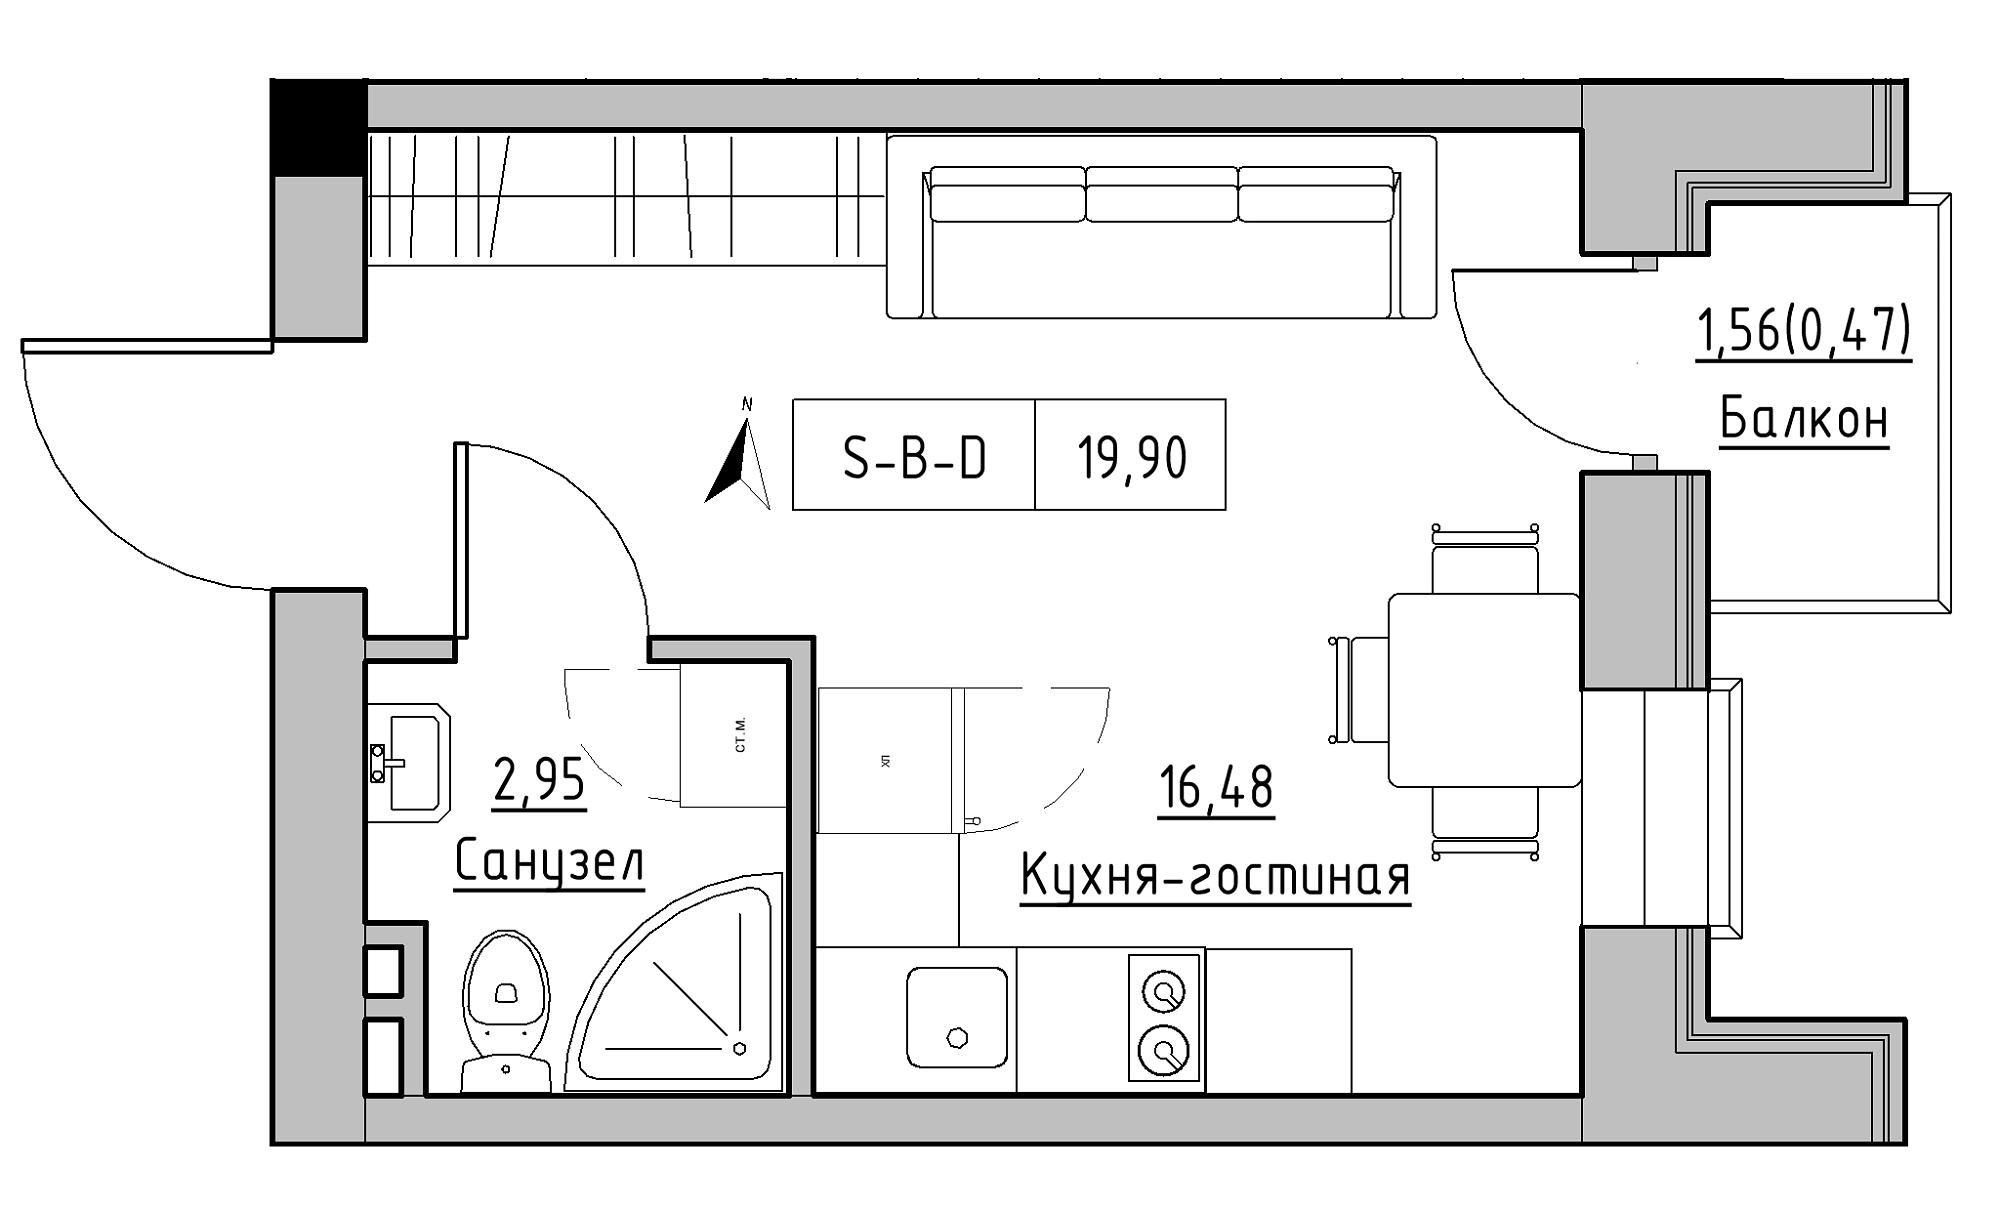 Планування Smart-квартира площею 19.9м2, KS-023-03/0006.